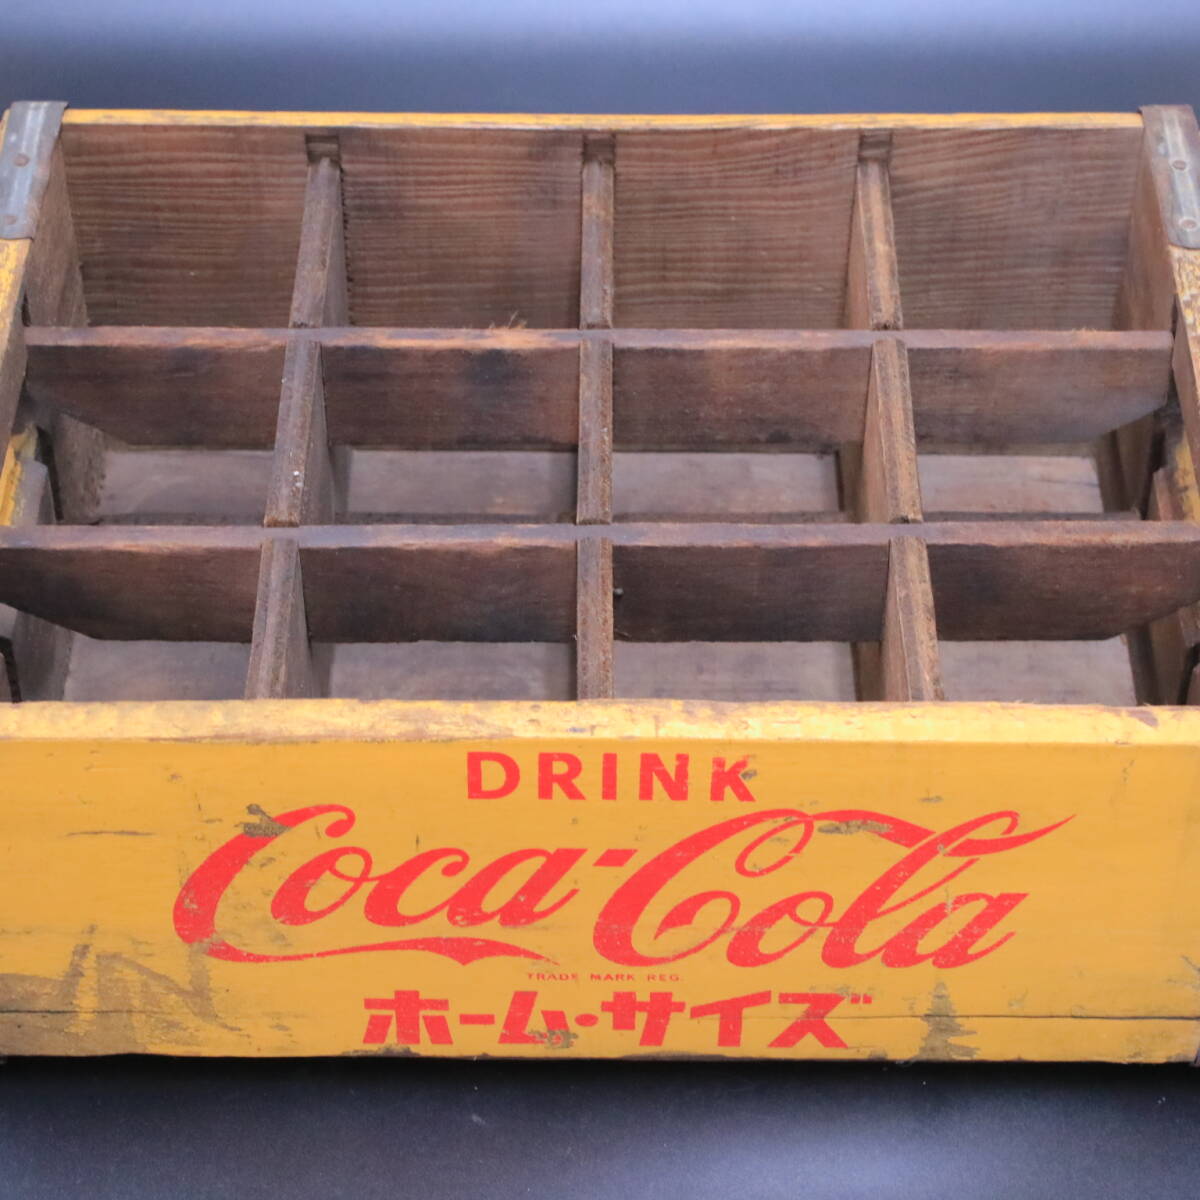 a//A7583[ Showa Retro ] Coca Cola Coca * Cola Home размер бутылка кейс ( дерево коробка ) стеклянная бутылка пустой бутылка совместно 5шт.@ подлинная вещь 